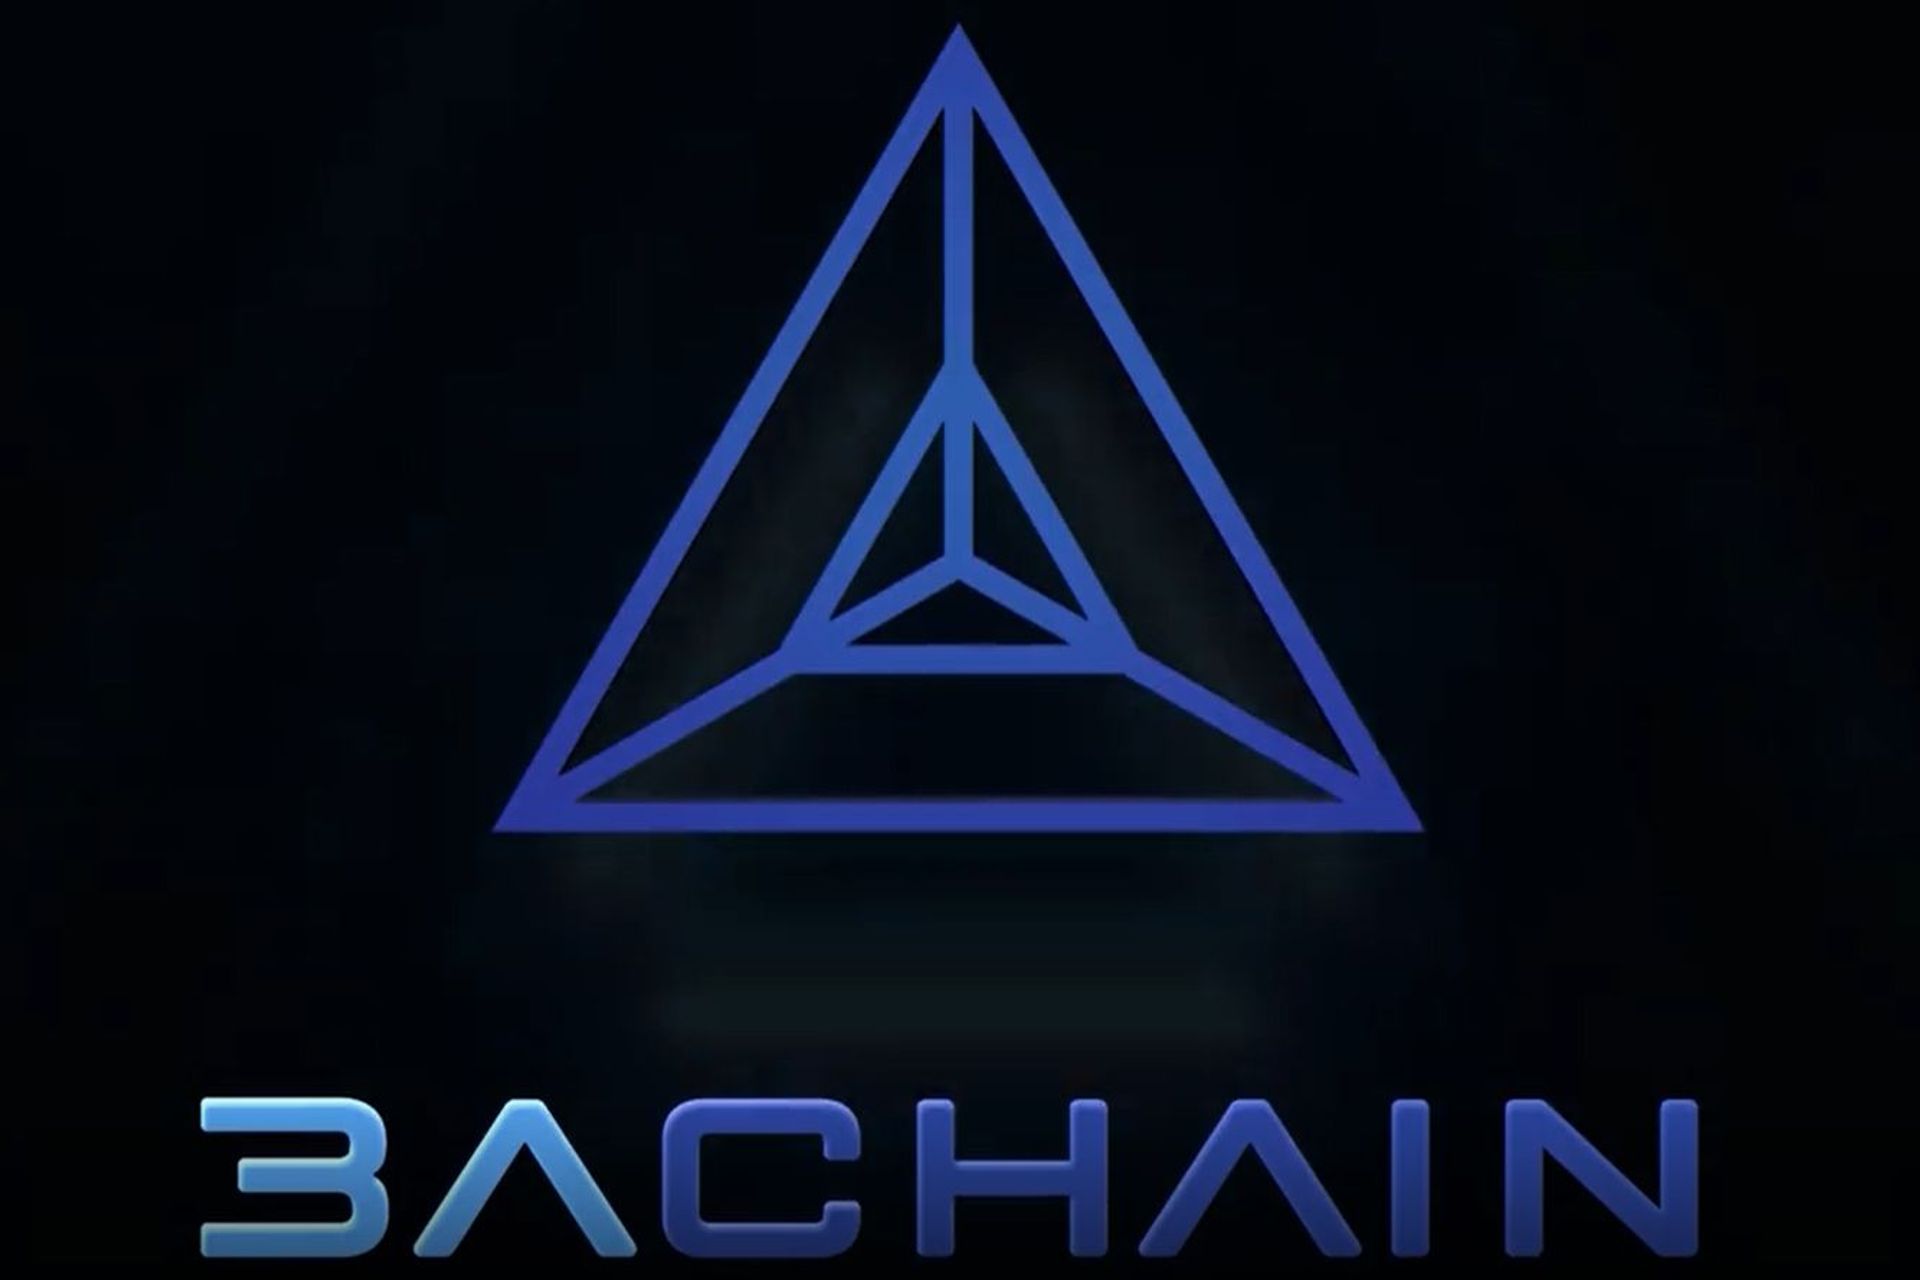 Лугано хотын эхлүүлсэн A3chain блокчейн логотип